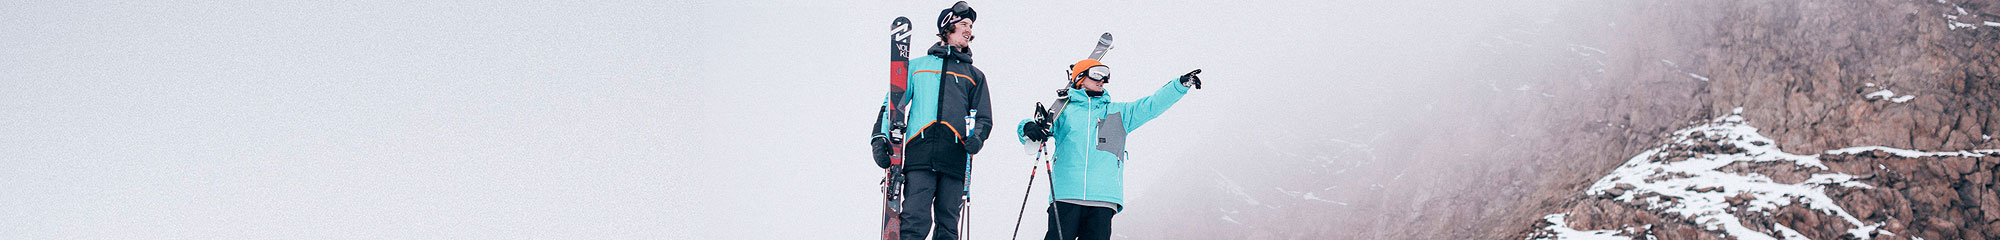 Ski and Snowboard Gear